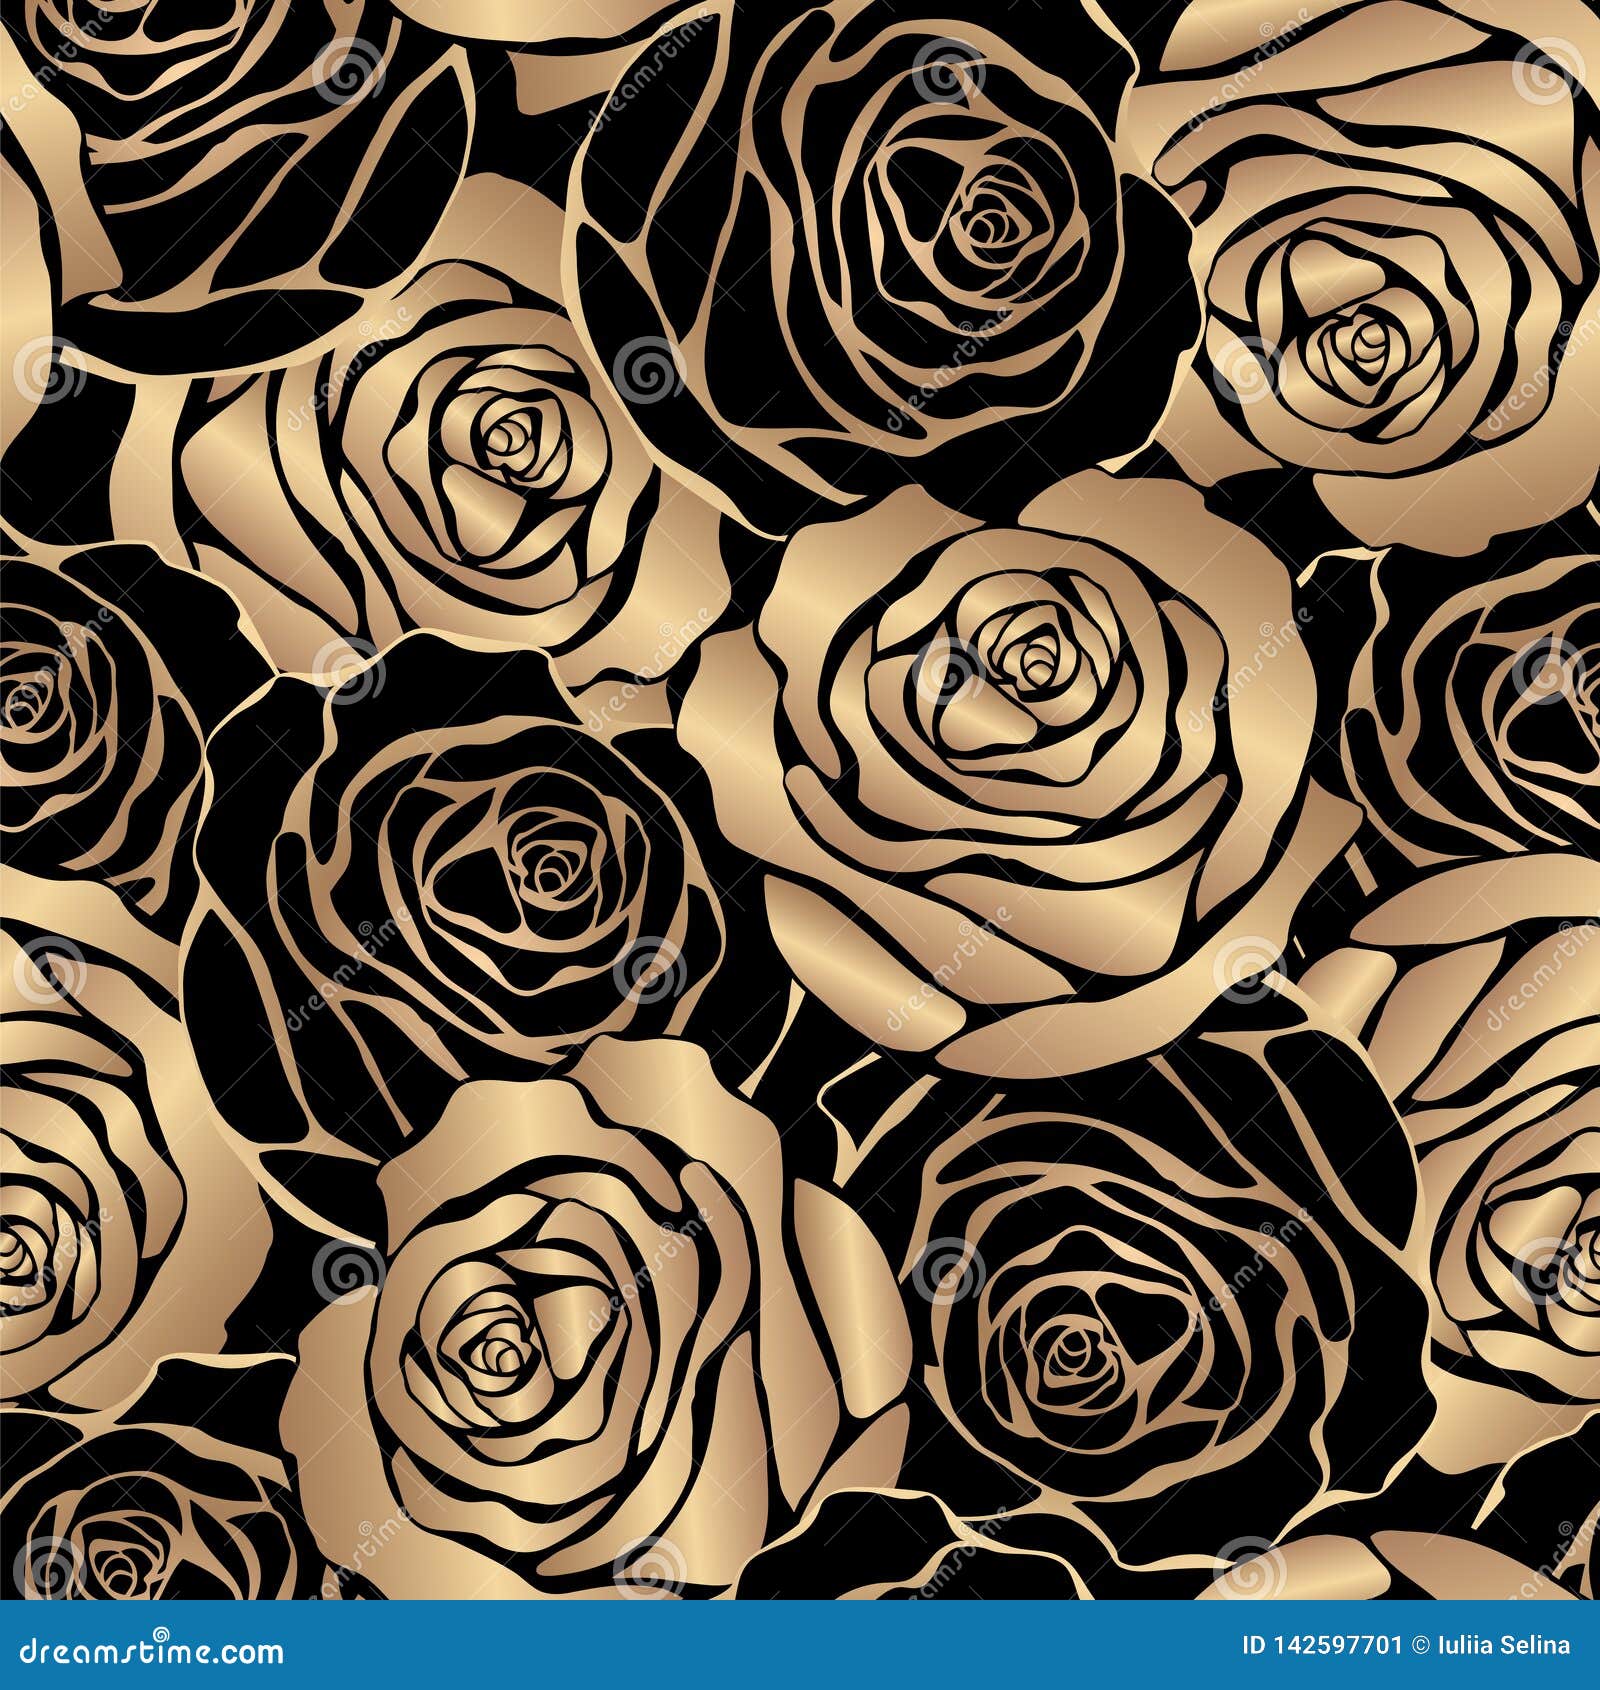 Những bông hoa hồng vàng lấp lánh trên nền đen tuyệt đẹp đang chờ bạn khám phá. Với cách phối màu độc đáo, hình ảnh này thực sự làm nổi bật vẻ sang trọng và đẳng cấp. Hãy tận hưởng từng chi tiết tinh tế và cảm nhận sự đẹp đến từ những bông hoa quý giá này.